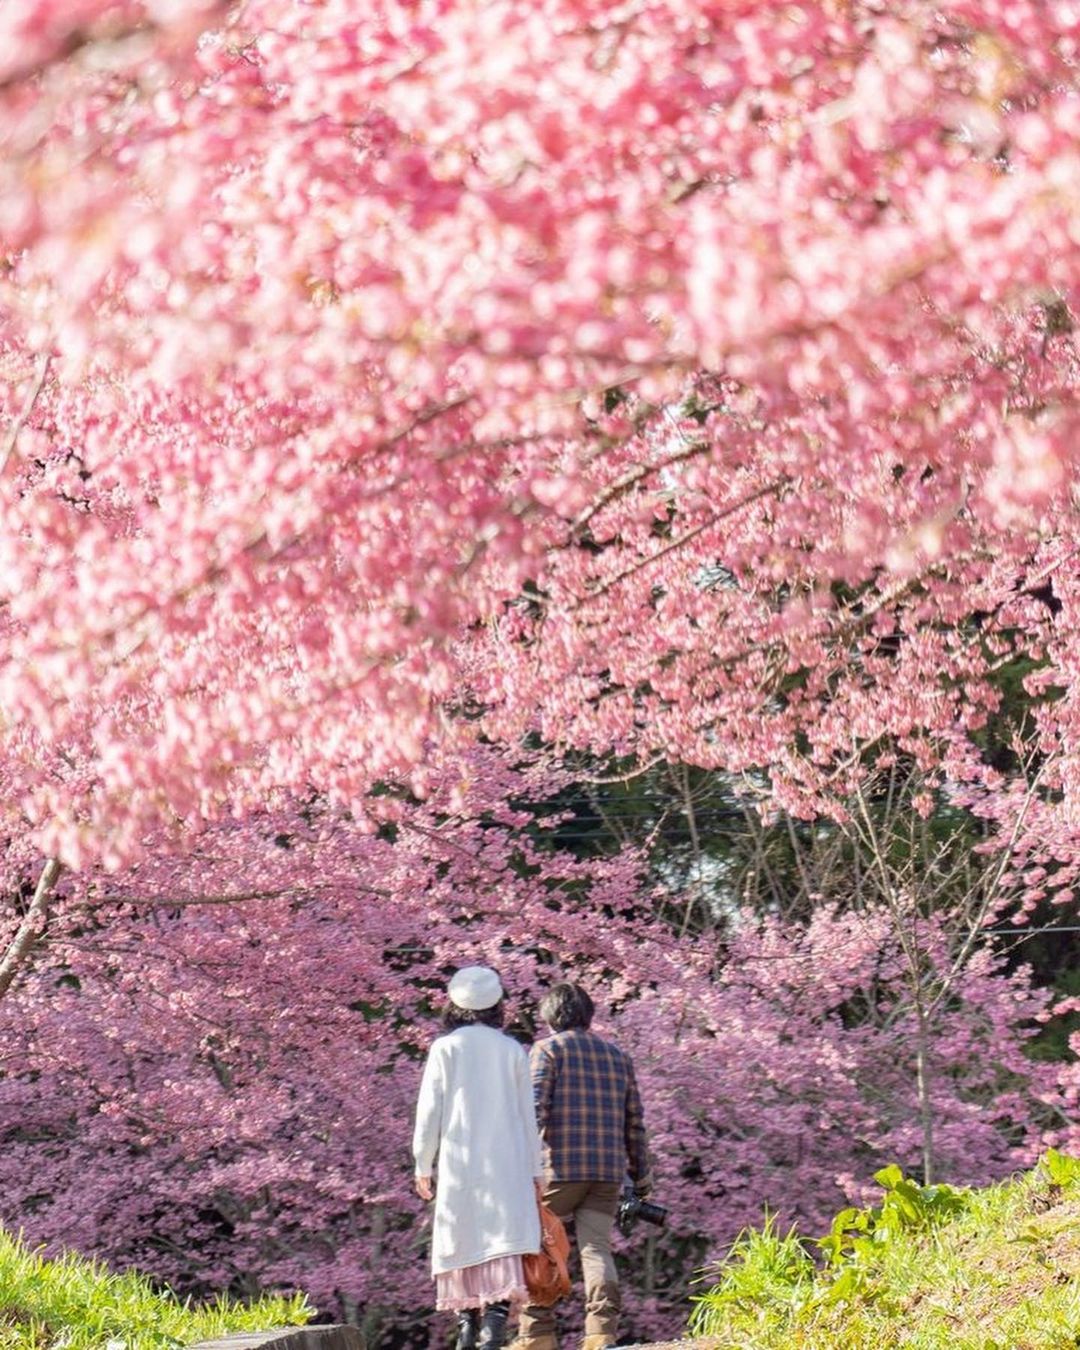 跟著賞櫻地圖遊臺中，欣賞春櫻浪漫美景。

Follow the Taichung cherry blossom map to en...